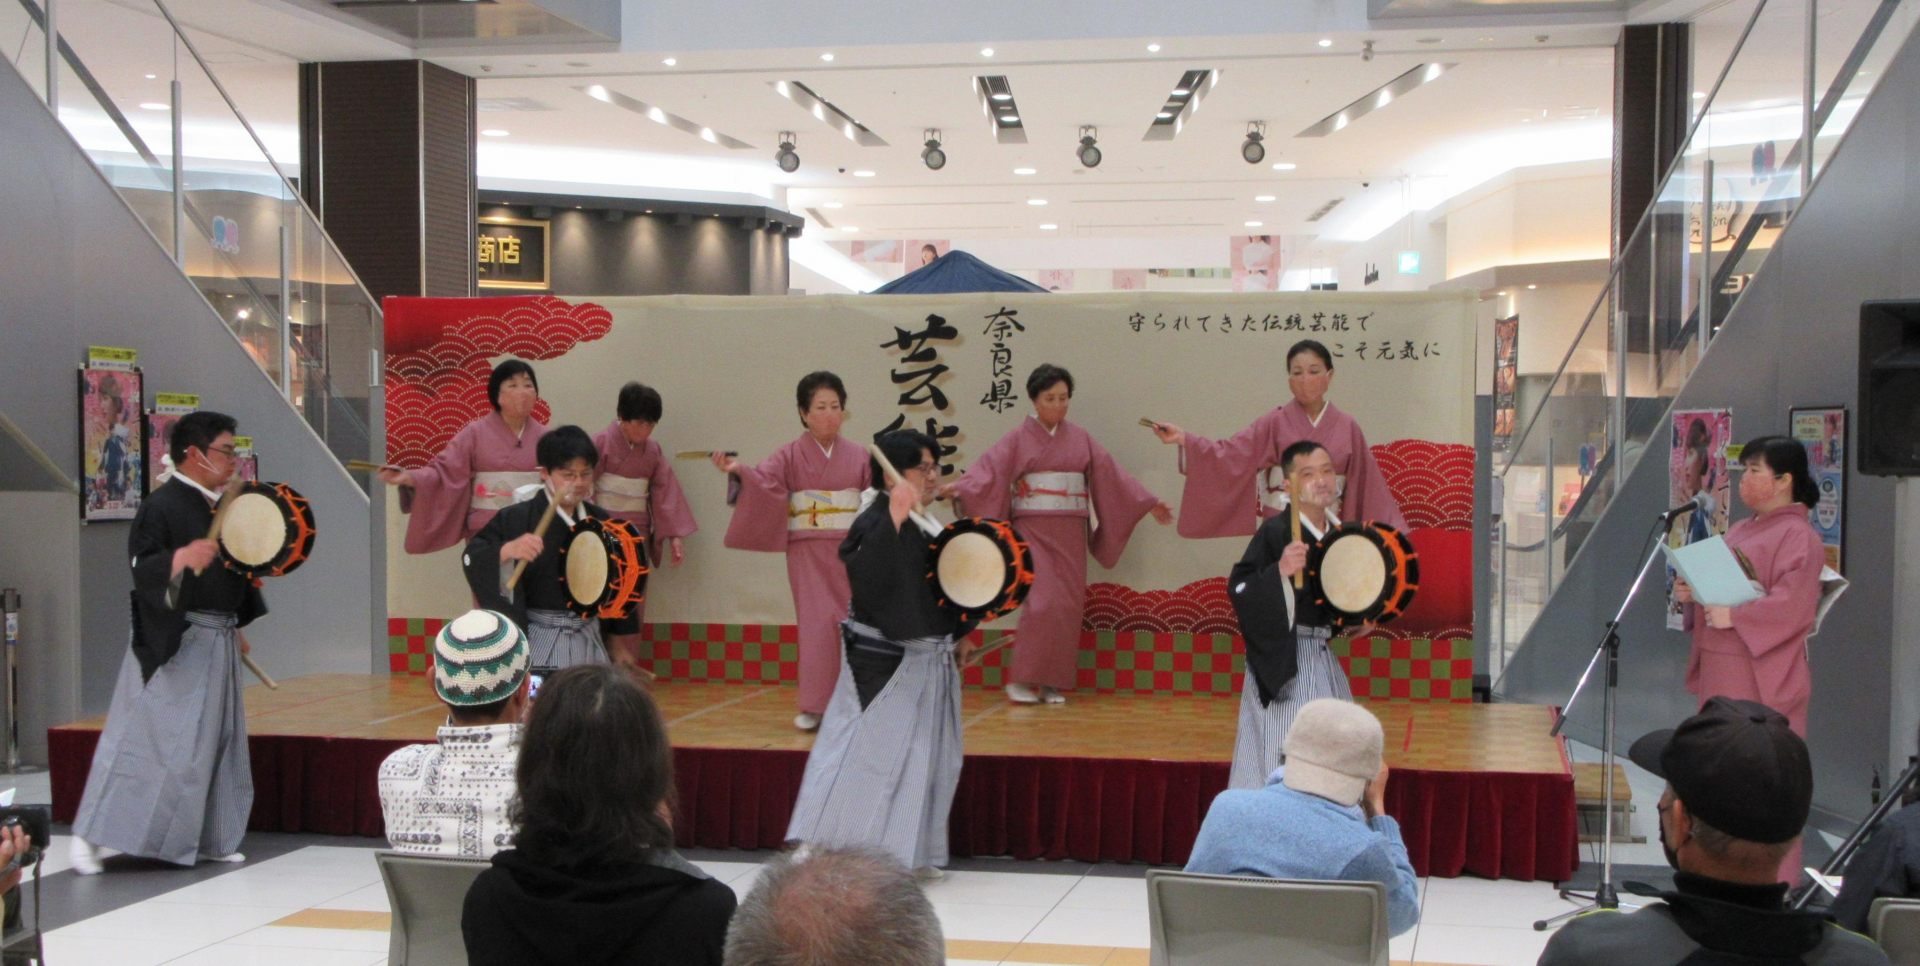 Shinohara Odori s'est développé non seulement comme un rituel shinto, mais aussi comme une performance pour divertir les gens.